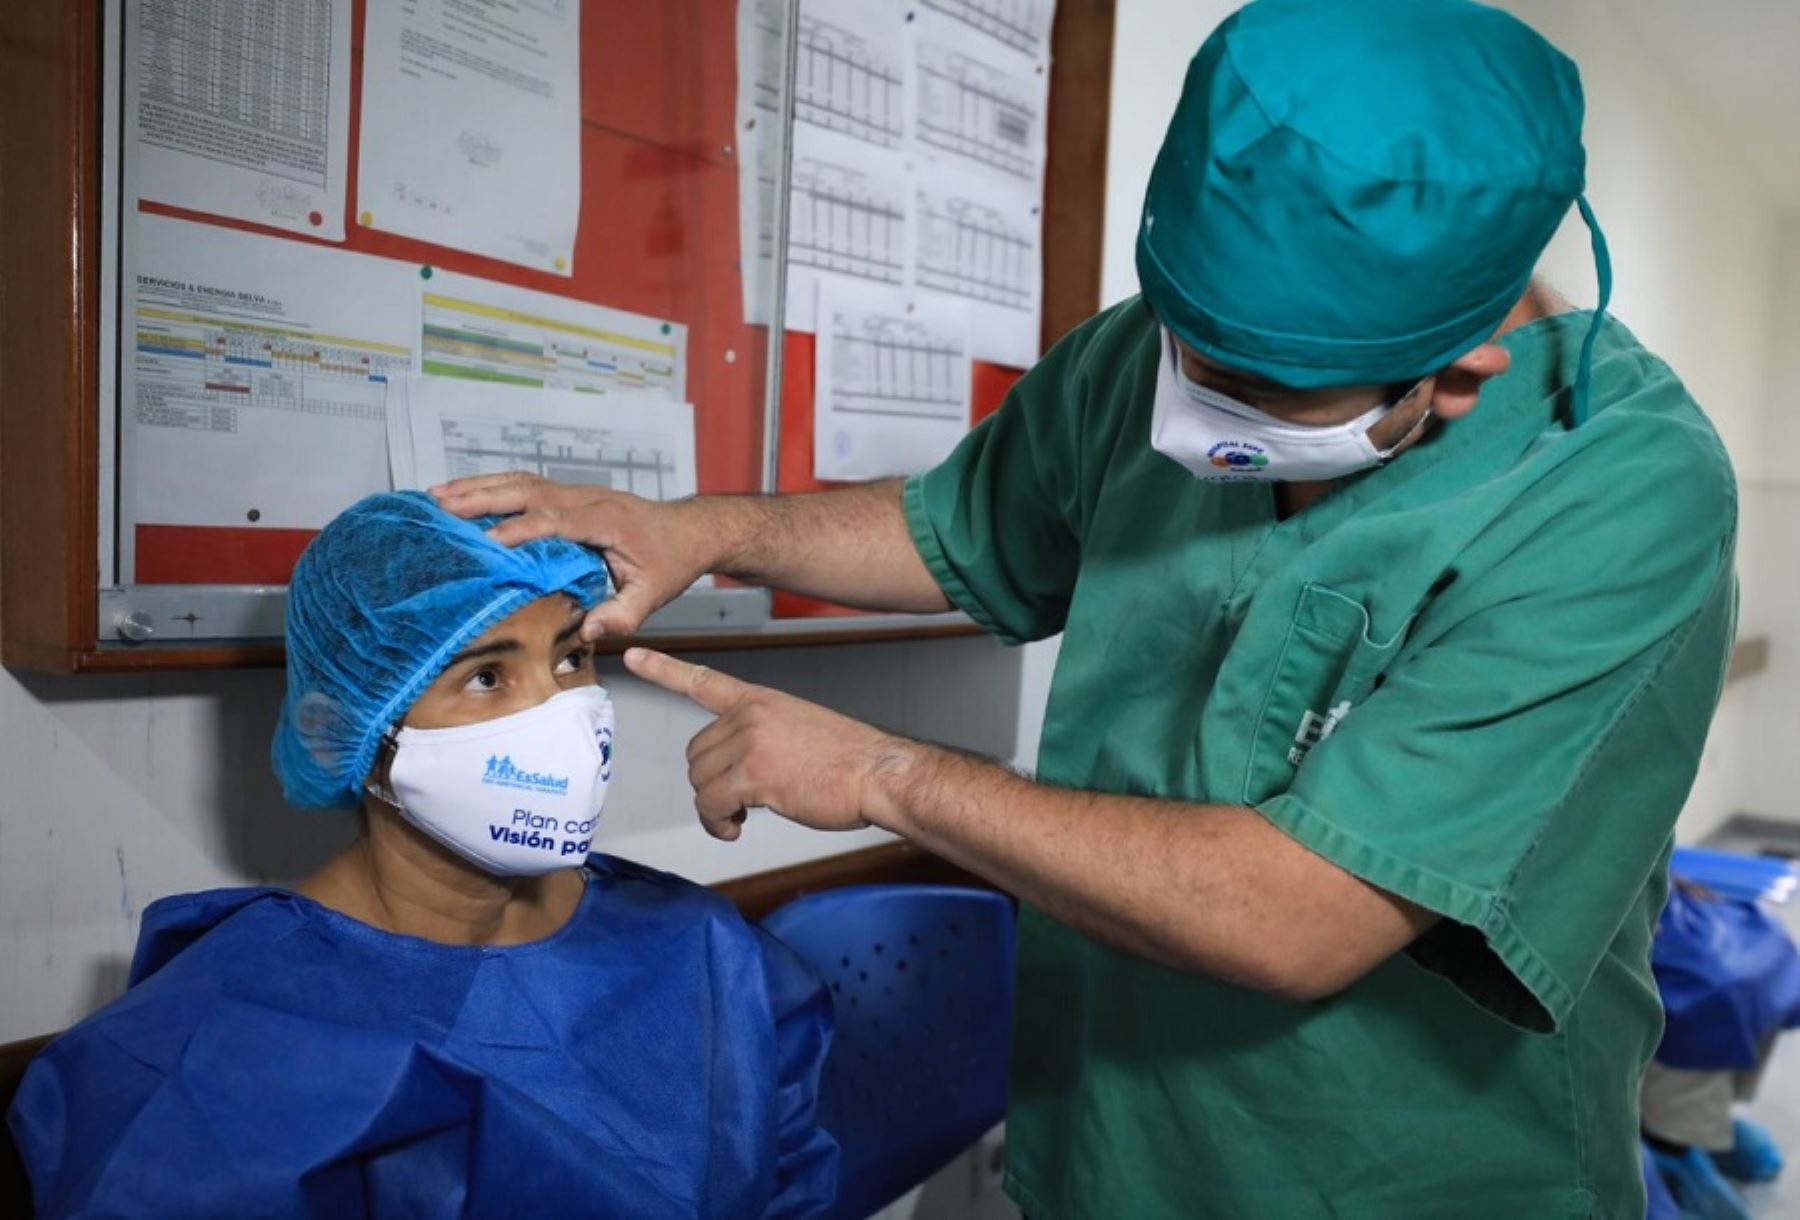 La campaña de desembalse de cirugías de cataratas "Volver a ver" de EsSalud se realiza a escala nacional y en una primera etapa las intervenciones se desarrollan simultáneamente en seis regiones del país: Lima, Piura, Ica, Cusco, Arequipa y Pasco.